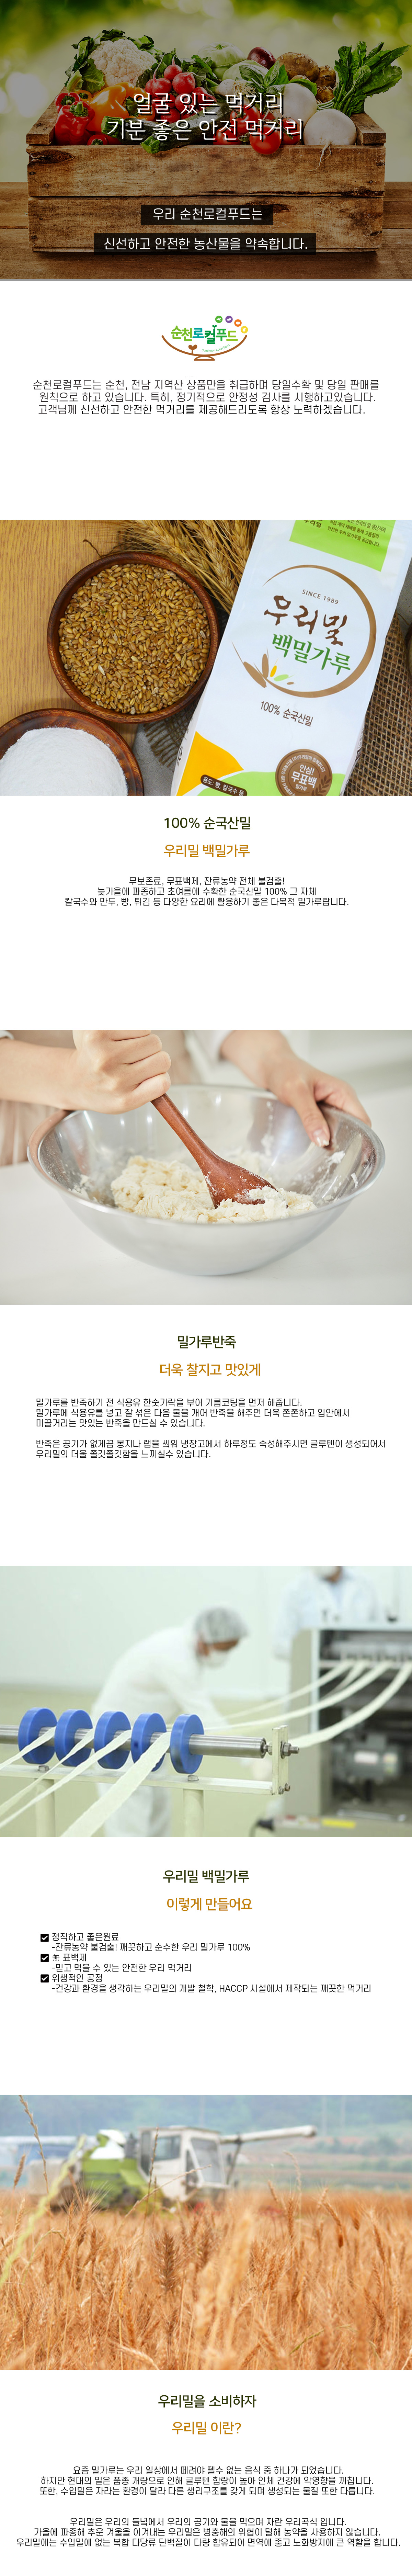 [우리밀] 우리밀(참백밀)가루 1kg